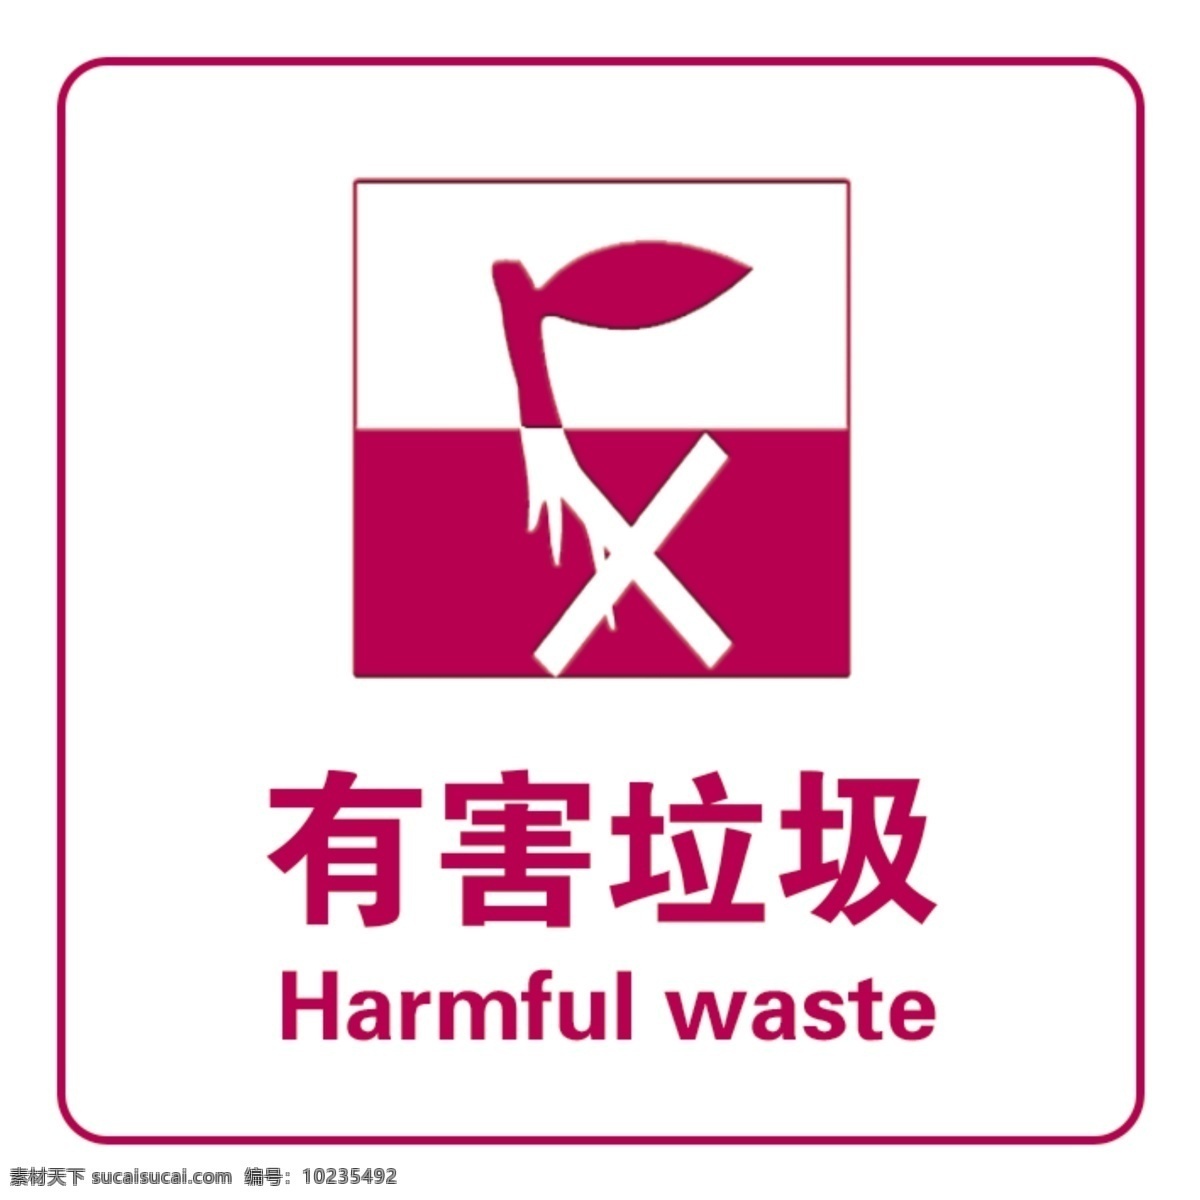 有害垃圾图片 有害垃圾 垃圾分类 垃圾回收 可回收垃圾 垃圾 分层